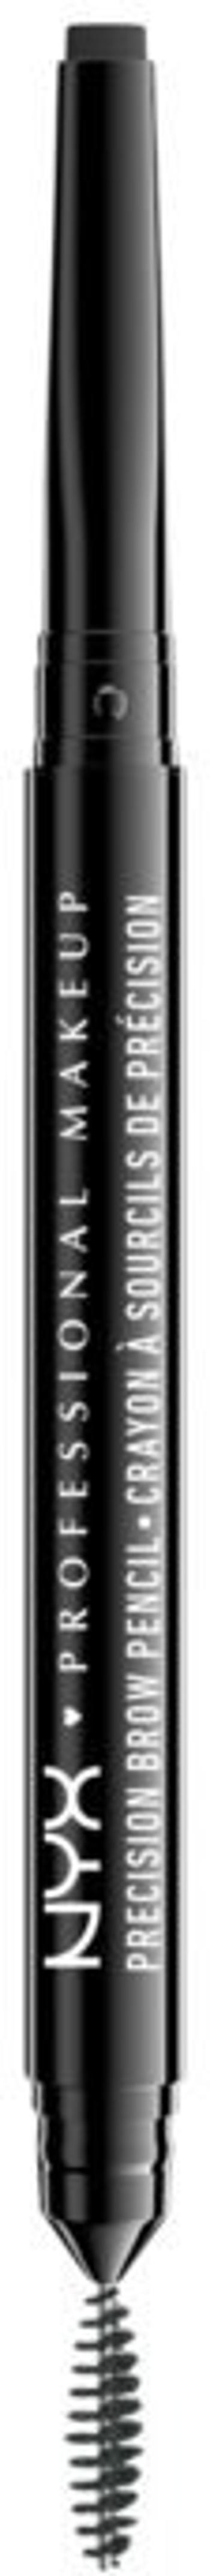 NYX Professional Makeup Precision Brow Pencil - Oboustranná tužka na obočí - Black 0.13 g